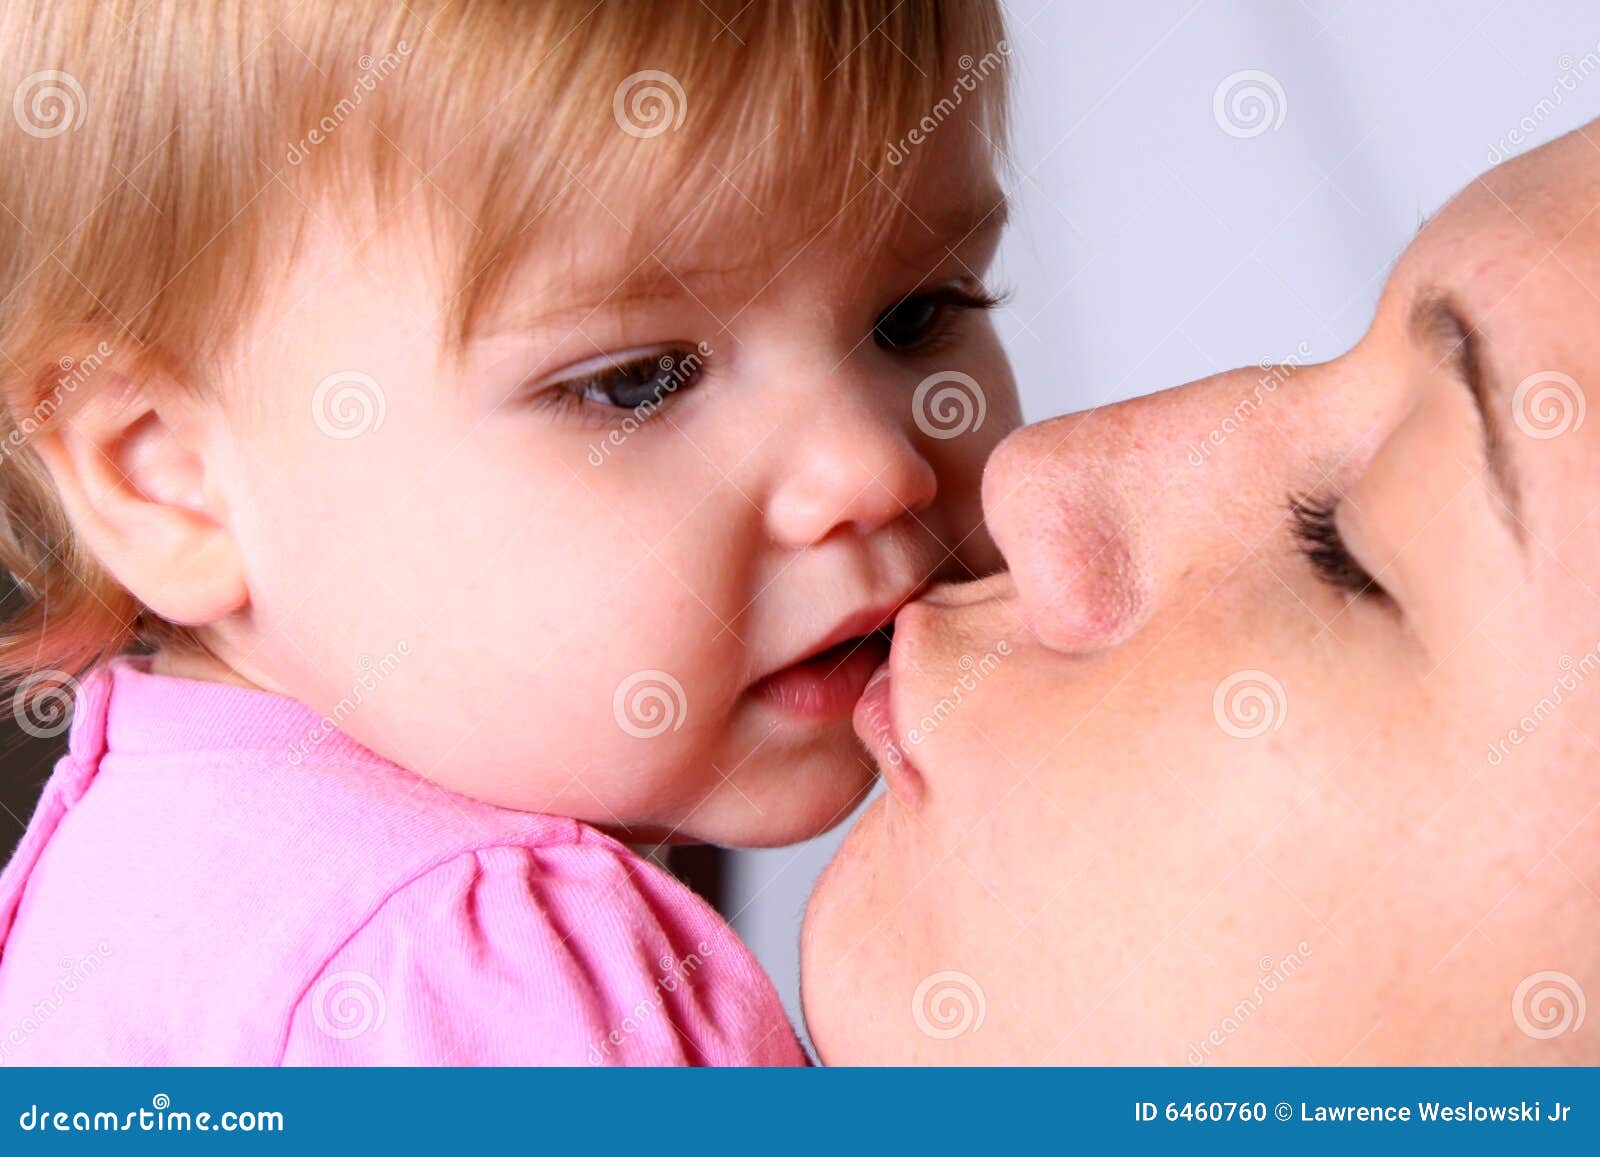 Вылизала маме рассказ. Мама целует с языком ребенка. Мальчик целует маму с языком. Поцелуйчики для мамы. Девушка целует маму с языком.